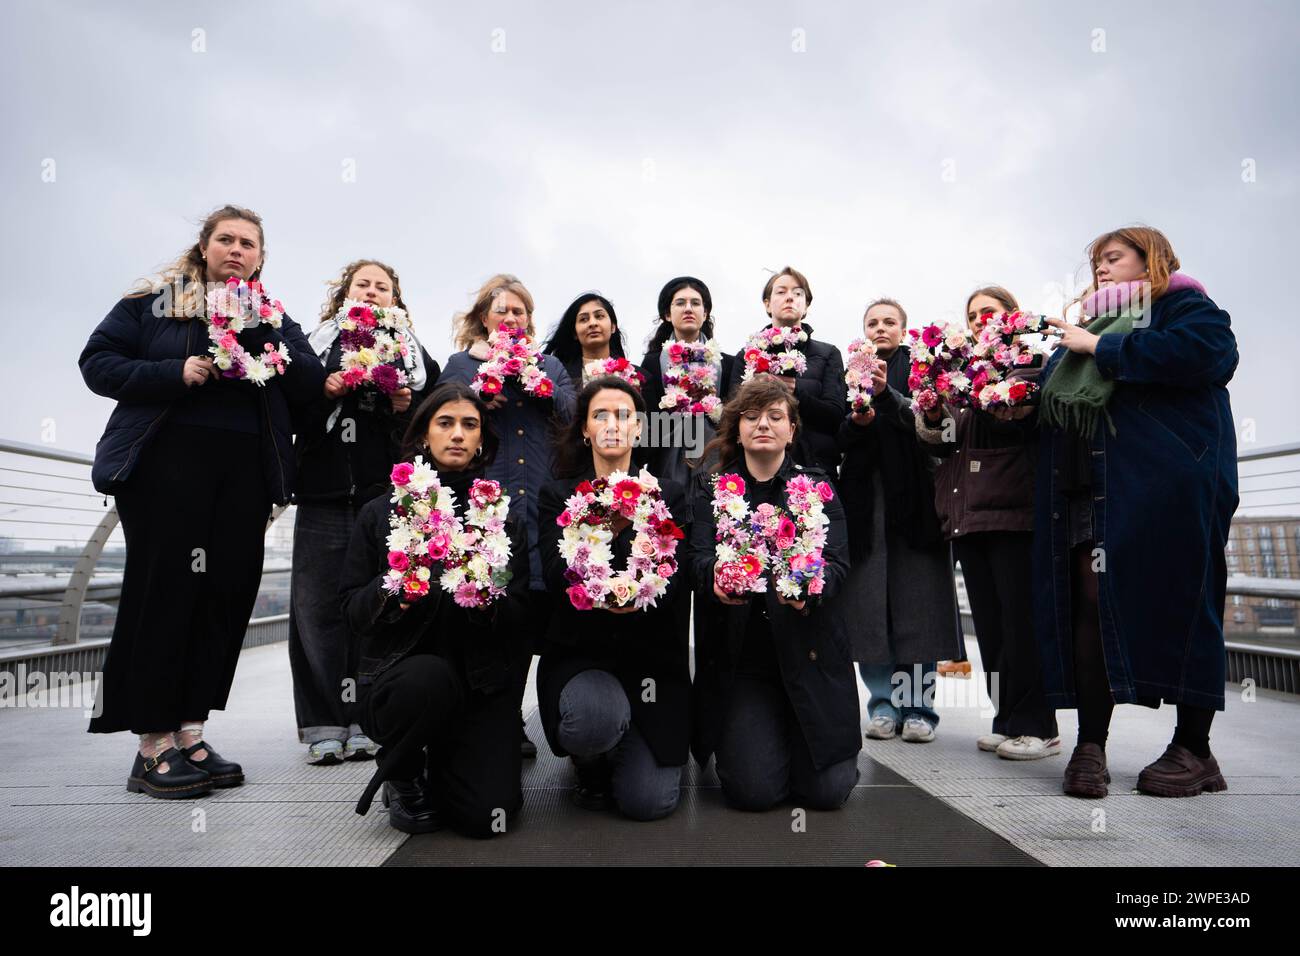 Mitglieder einer Koalition internationaler Hilfsorganisationen veranstalten eine Demonstration zum Internationalen Frauentag auf der Millennium Bridge, London, in der sie zu einem sofortigen und dauerhaften Waffenstillstand in Gaza aufrufen. Bilddatum: Donnerstag, 7. März 2024. Stockfoto